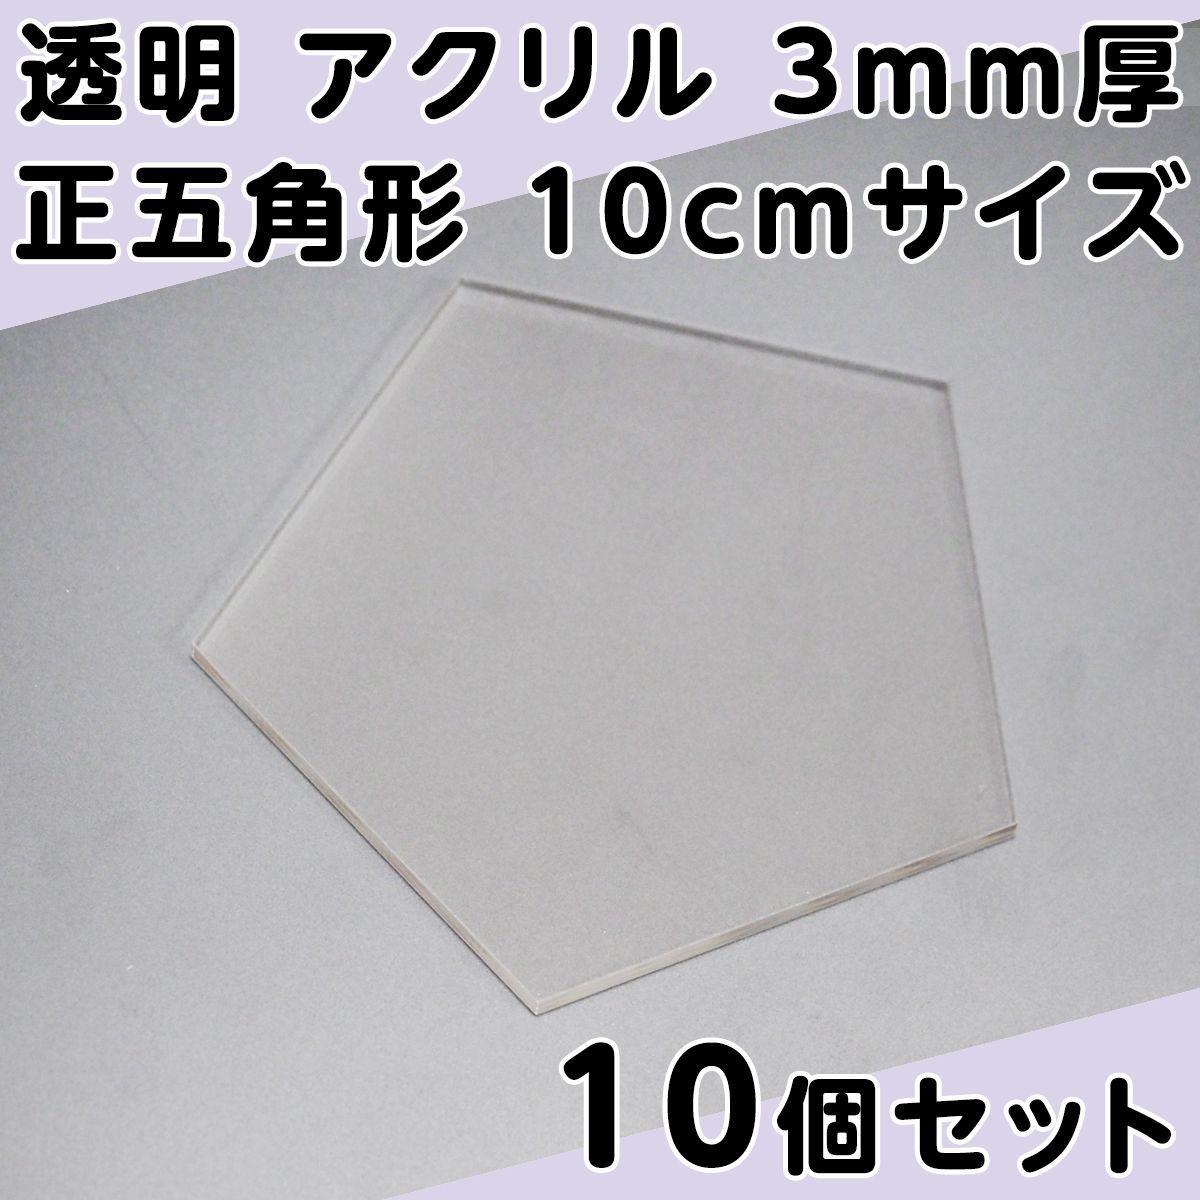 透明 アクリル 3mm厚 正五角形 10cmサイズ 10個セット - メルカリ